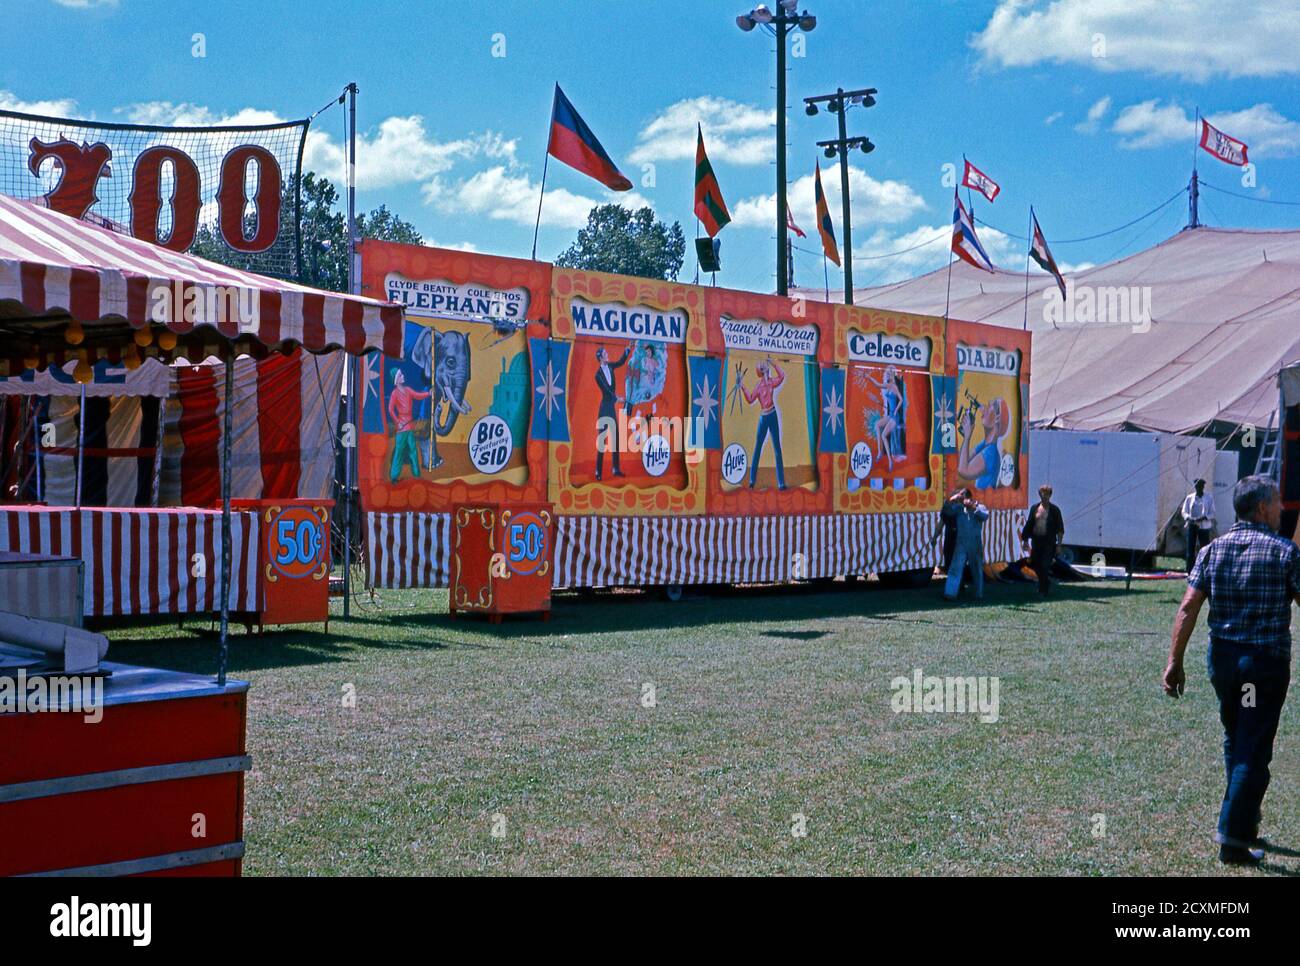 Ein Vintage-Foto der Nebenschauplatz-Gasse am Clyde Beatty Cole Bros Brothers Combined Circus, USA um 1960. Die handbemalten Banner zeigen, dass die Attraktionen Elefanten, ein Zauberer, Frances Doran (ein Schwert Swallower), Celeste und Diablo (wahrscheinlich ein Feuer Esser) gehören. Das bemalte Werbematerial gilt heute als Volkskunst. Dieses Bild ist von einem alten amerikanischen Amateur Kodak Farbtransparenz. Stockfoto